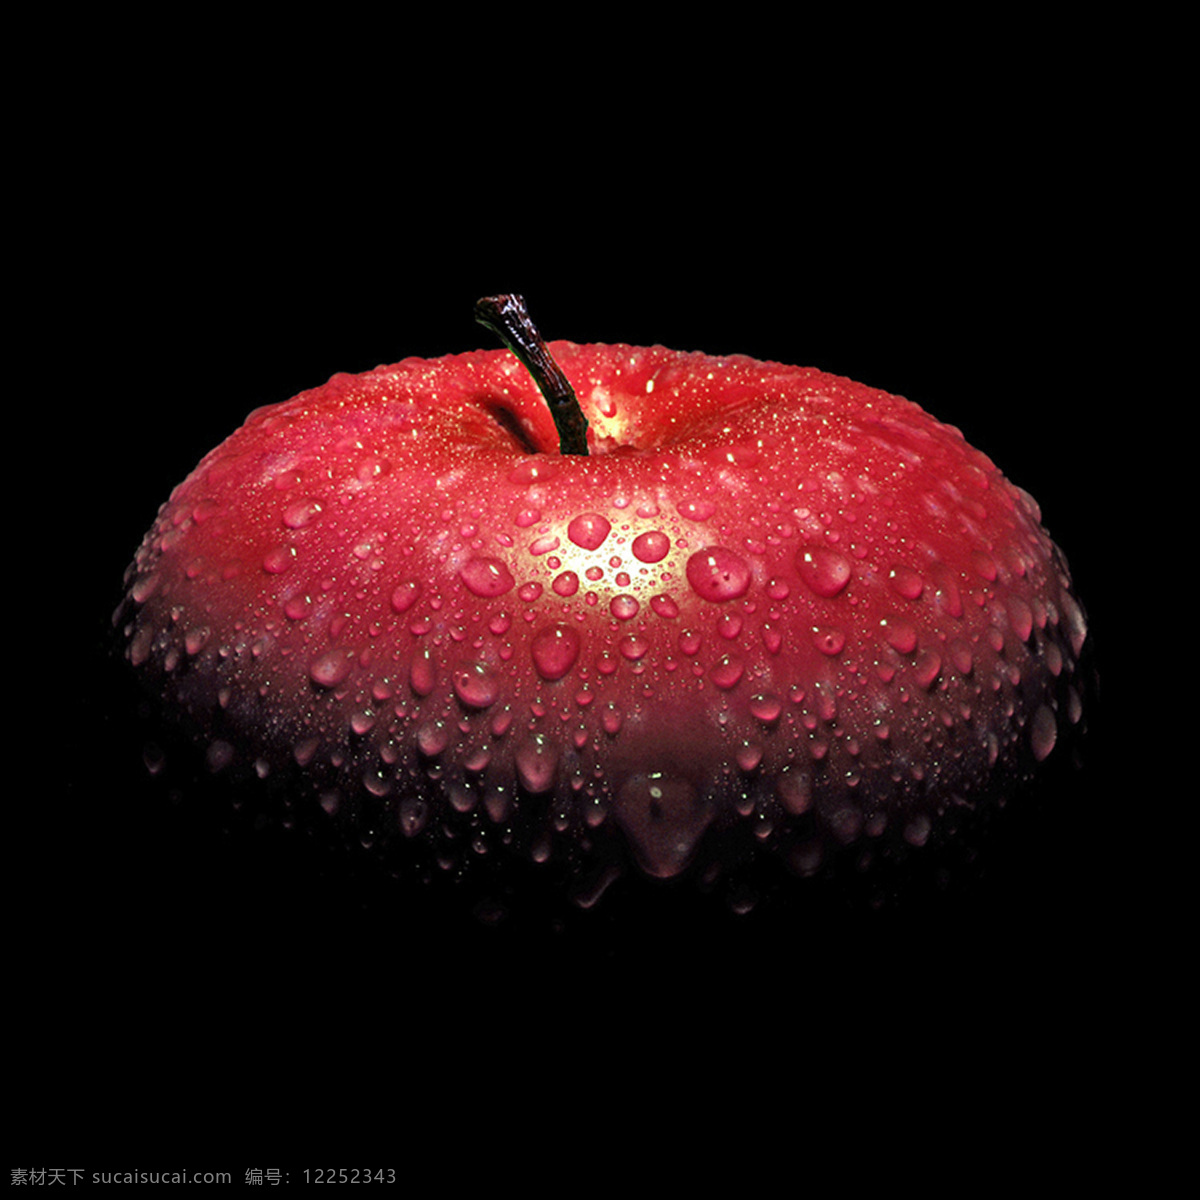 红苹果 苹果 生果 水果 餐饮美食 食物原料 摄影图库